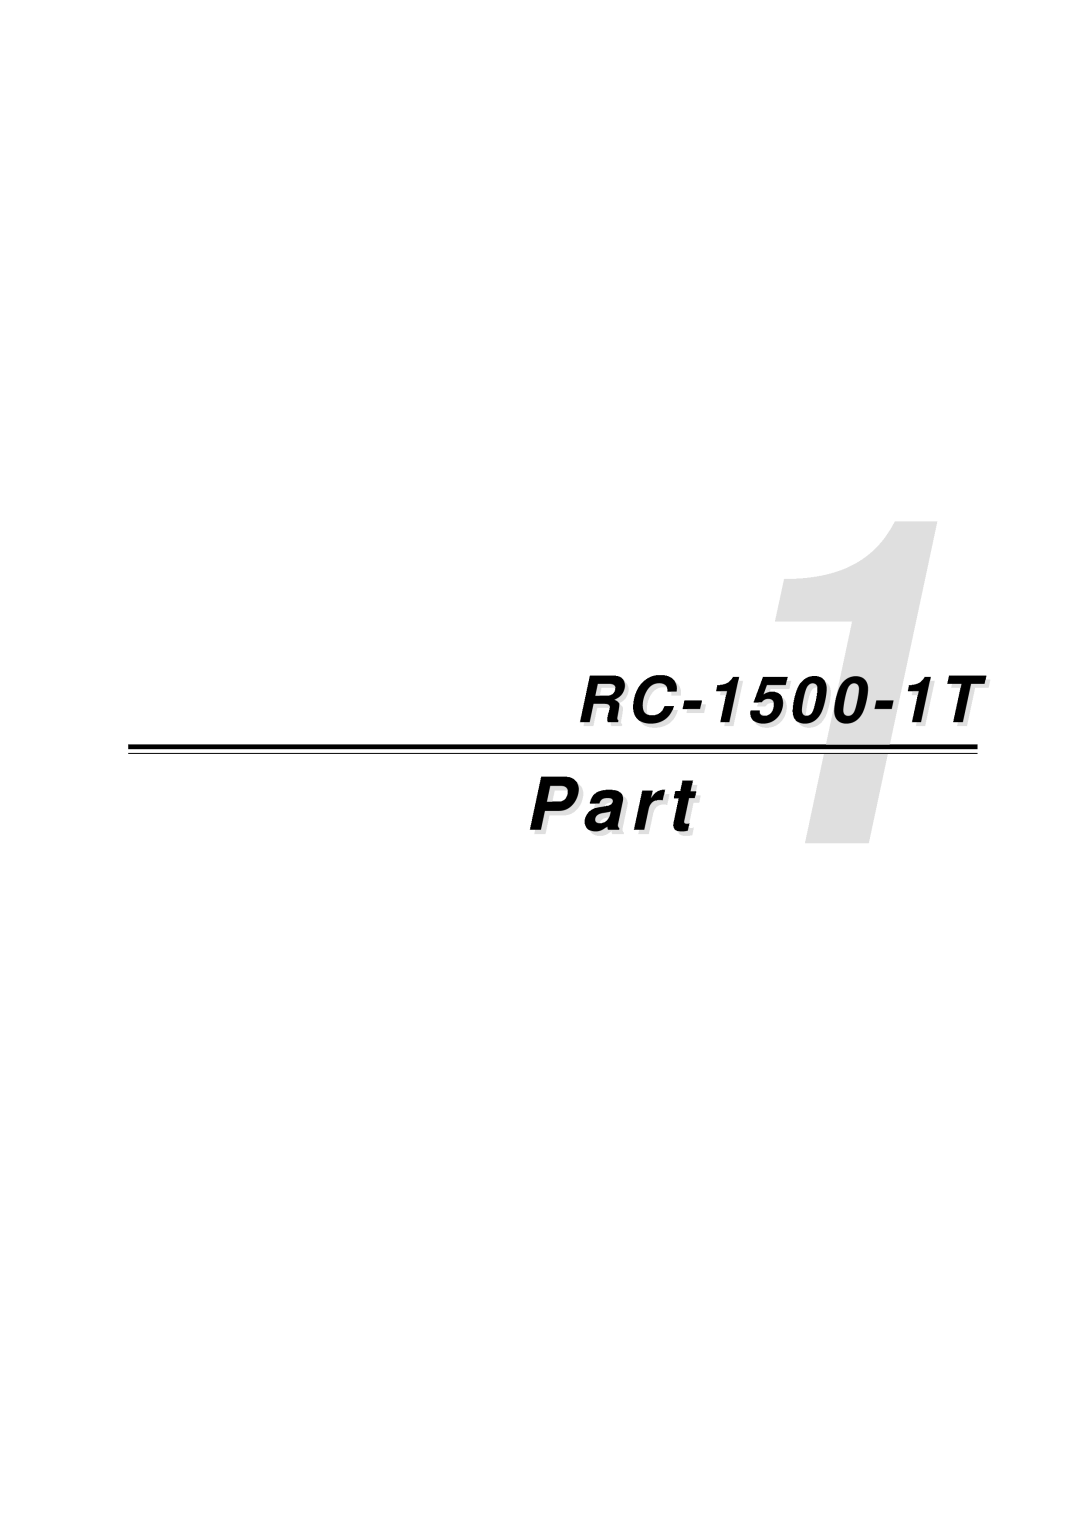 Furuno RC-1500-1T manual Part, RC-11500-1T 